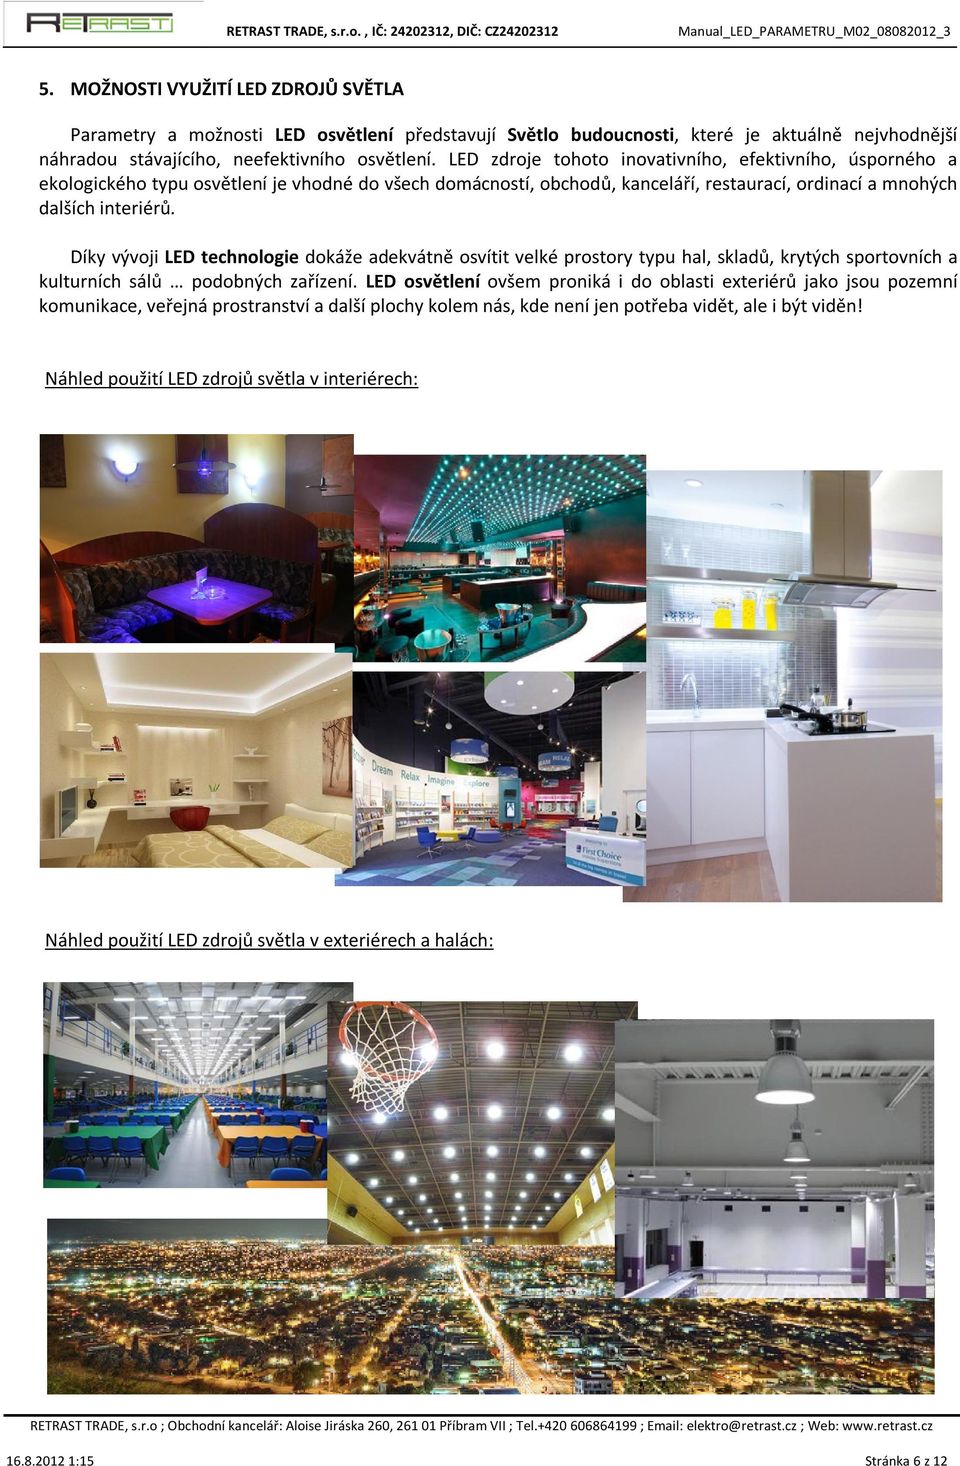 Díky vývoji LED technologie dokáže adekvátně osvítit velké prostory typu hal, skladů, krytých sportovních a kulturních sálů podobných zařízení.